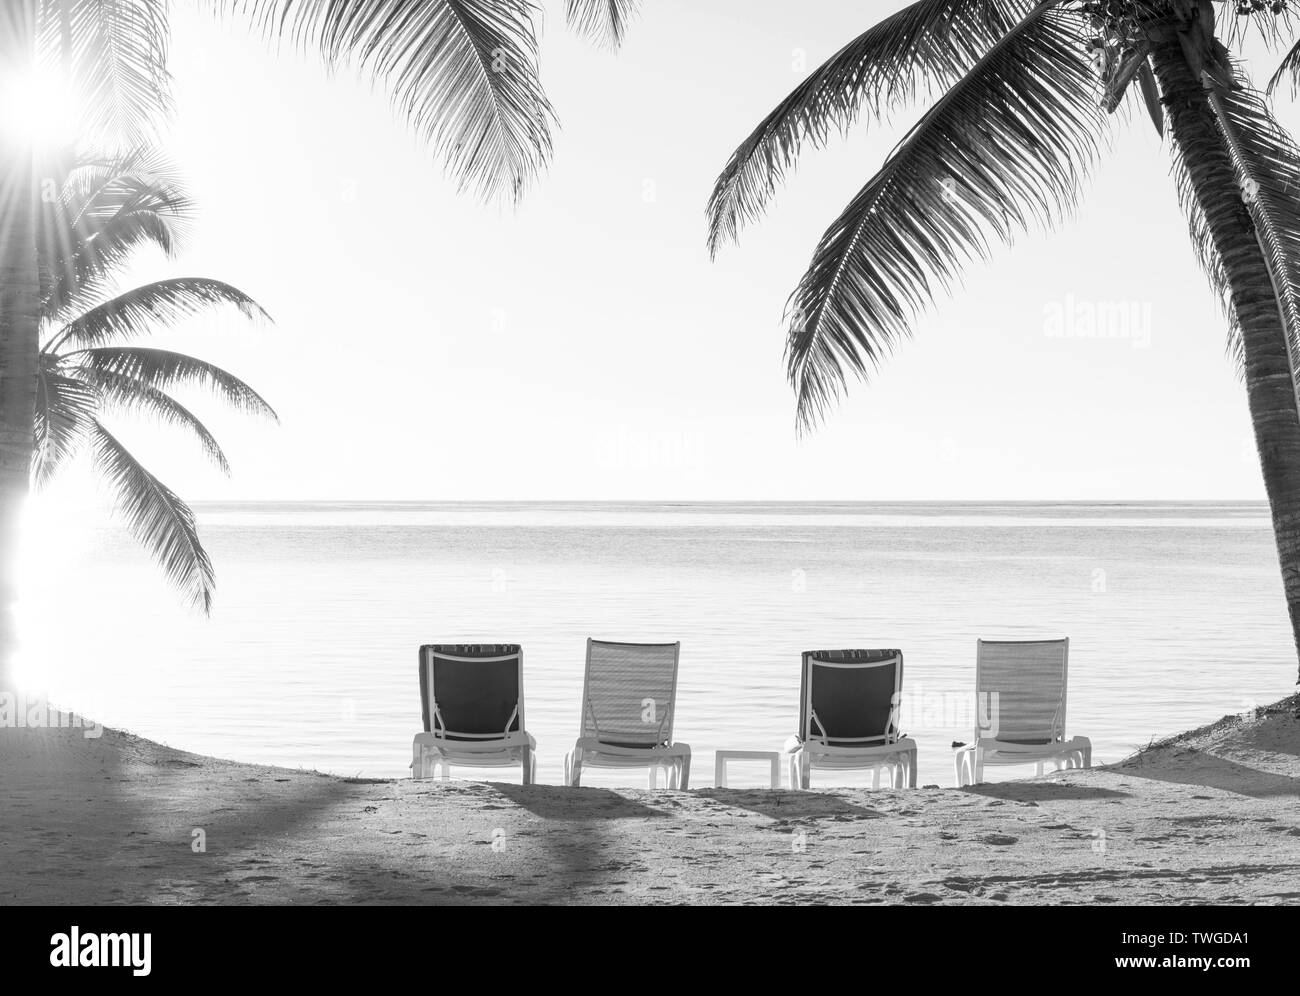 Vacances de plage transats dans le sable avec vue sur l'océan en noir et blanc Banque D'Images